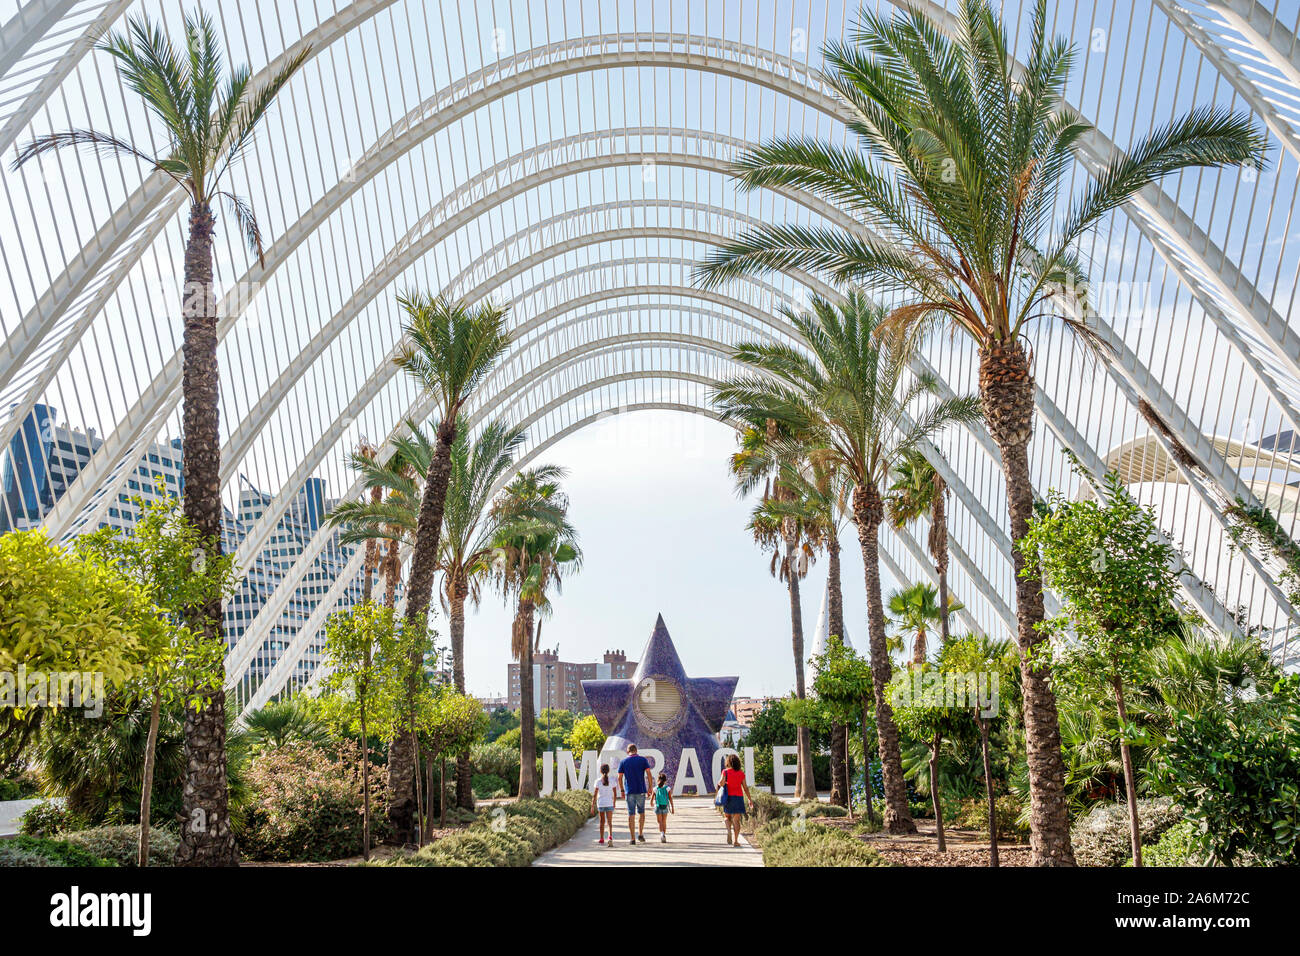 Valencia Spain,las Artes y las Ciencias,City of Arts & Sciences,L'Umbracle,Santiago Calatrava,architecture,sculpture botanical garden,parabolic arches Stock Photo